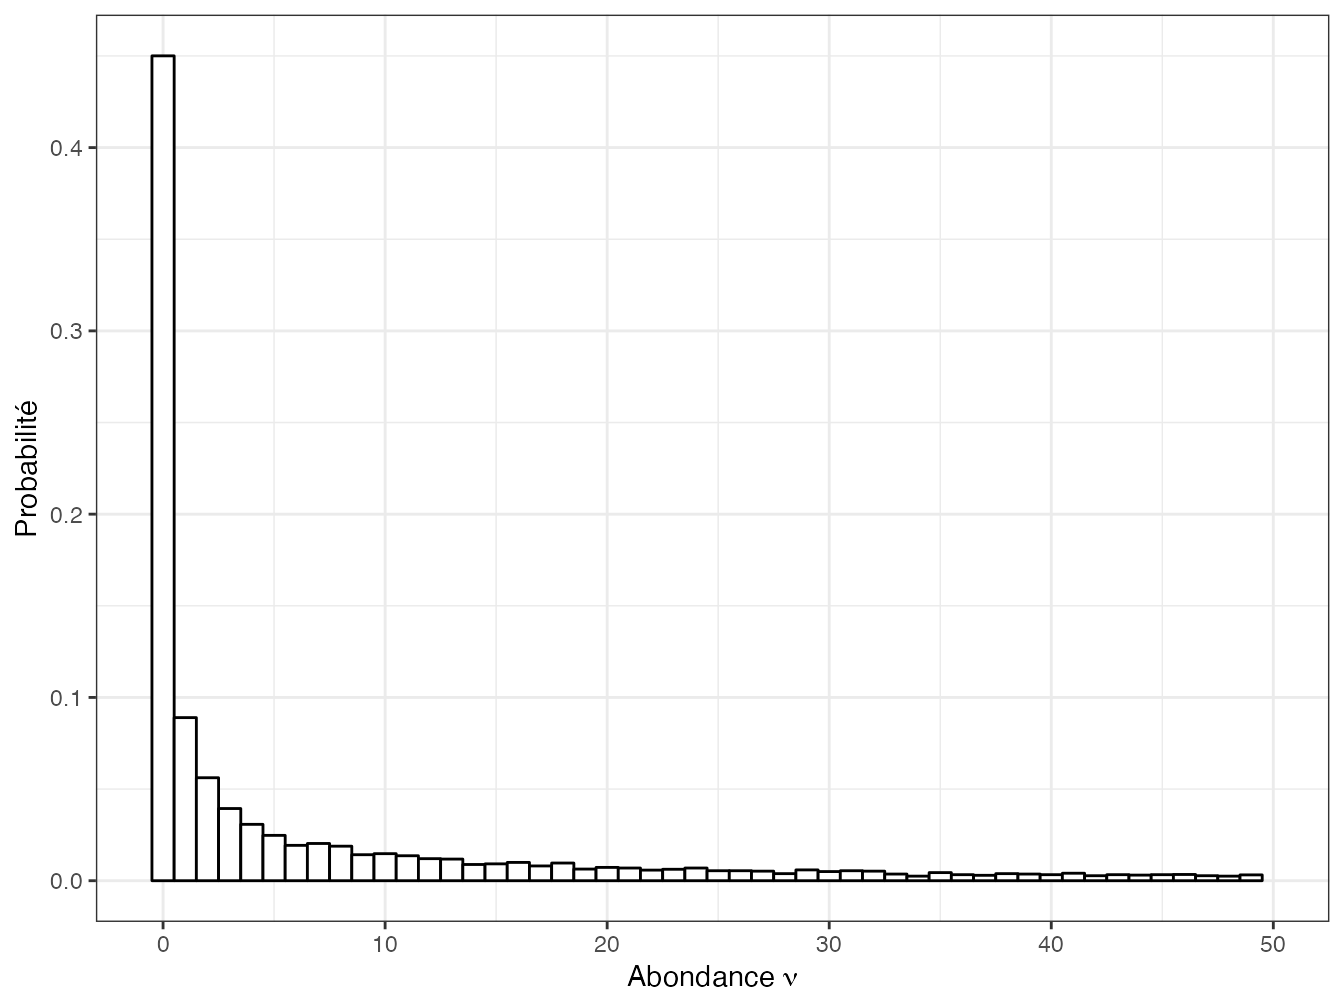 Réalisation d’une loi gamma de paramètres \(0,2\) et \(100\). L’histogramme représente la proportion (qui estime la probabilité) des valeurs inférieures à 50. Les espèces d’abondance nulle ne sont pas observées dans l’échantillon.